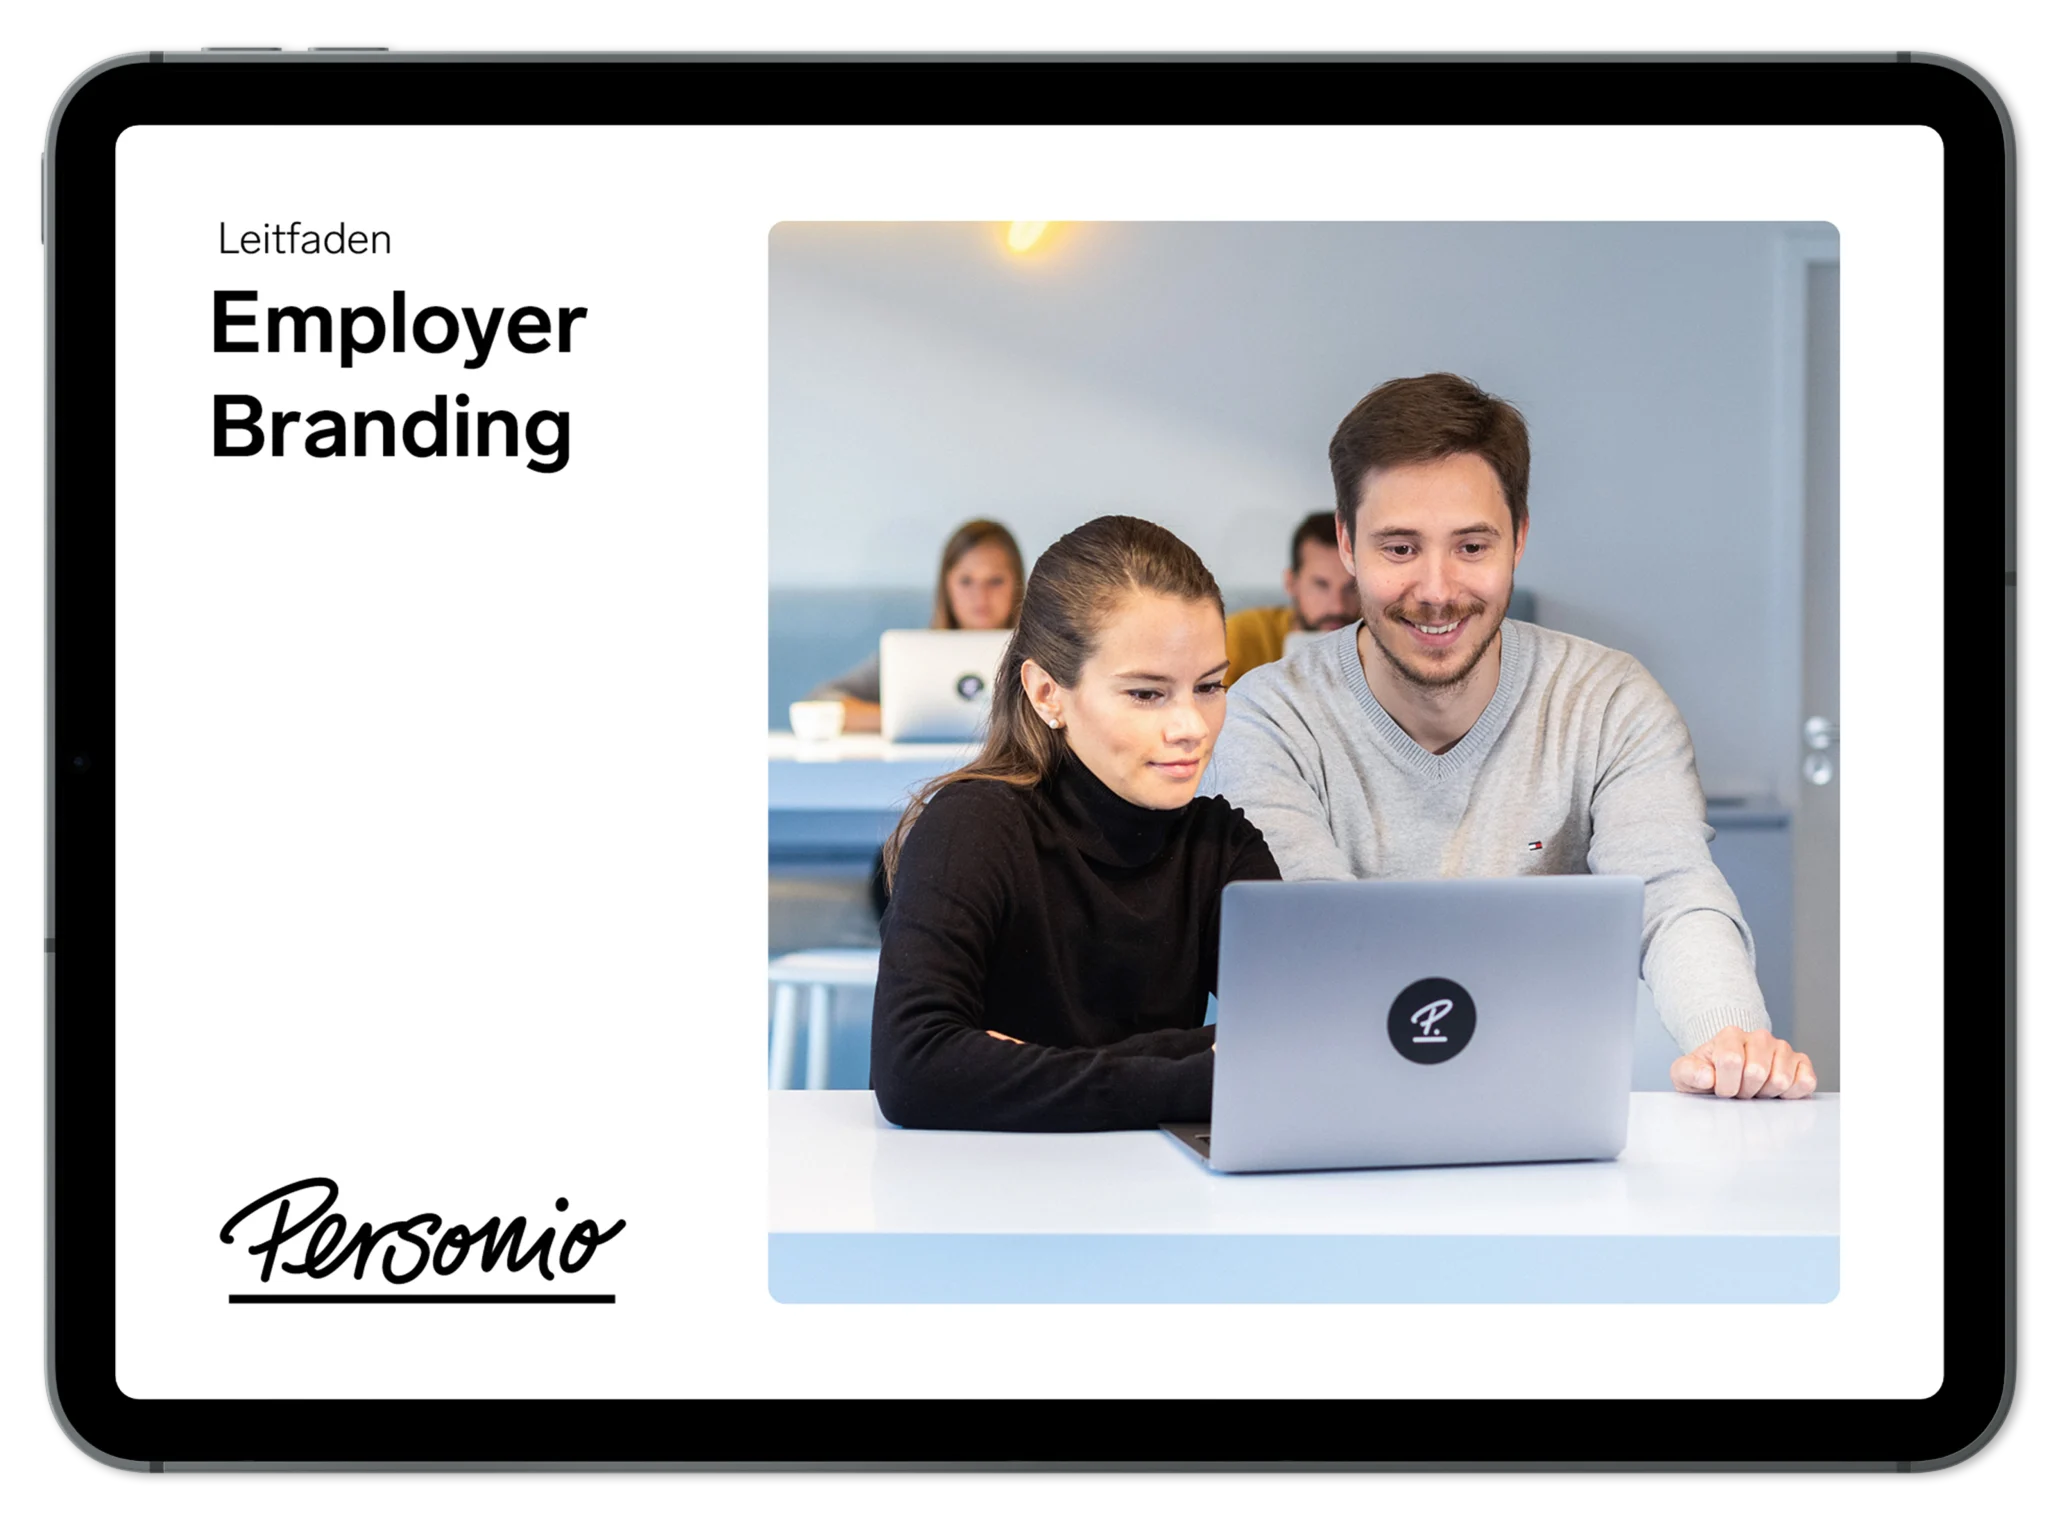 Employer-Branding-E-Book-Personio Seite 01